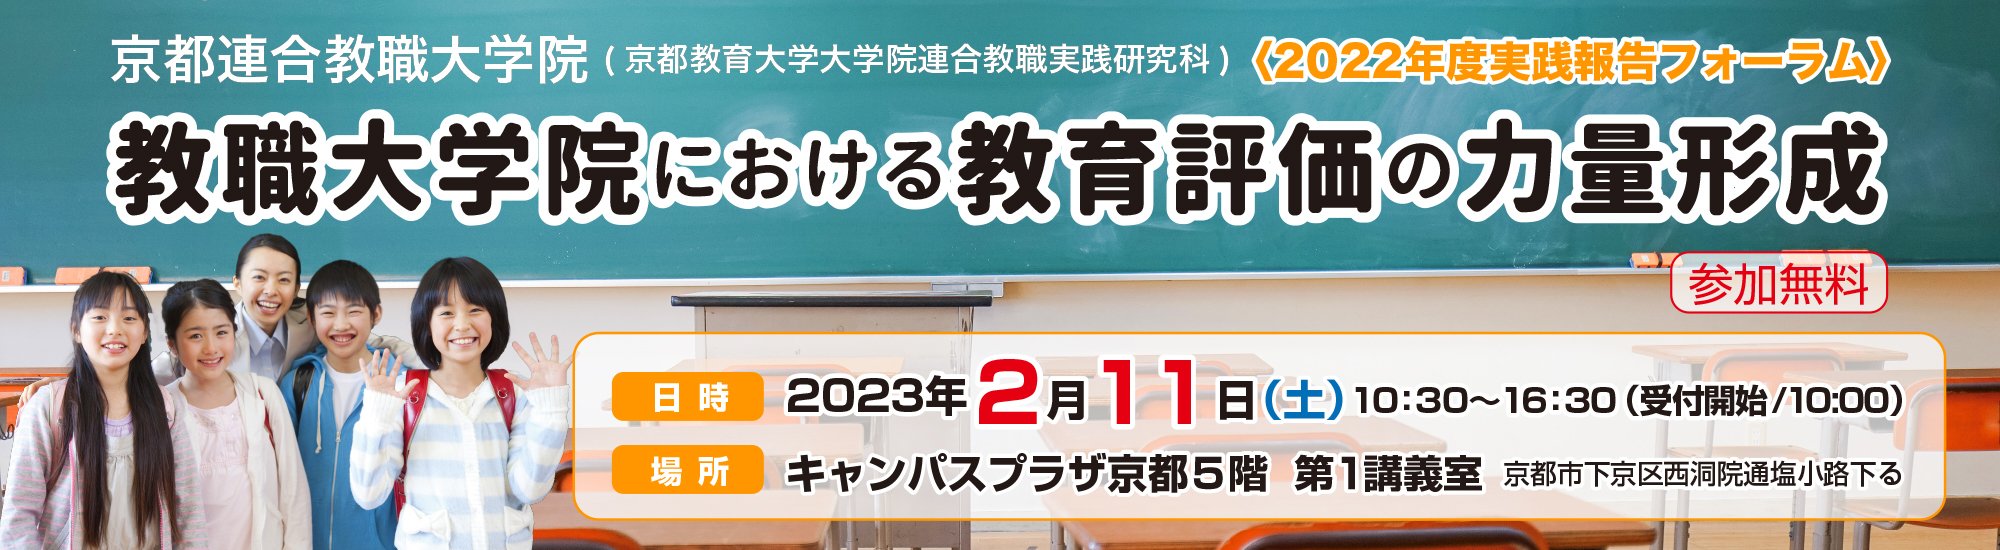 京都教育大学連合教職実践研究科2022年度実践報告フォーラム